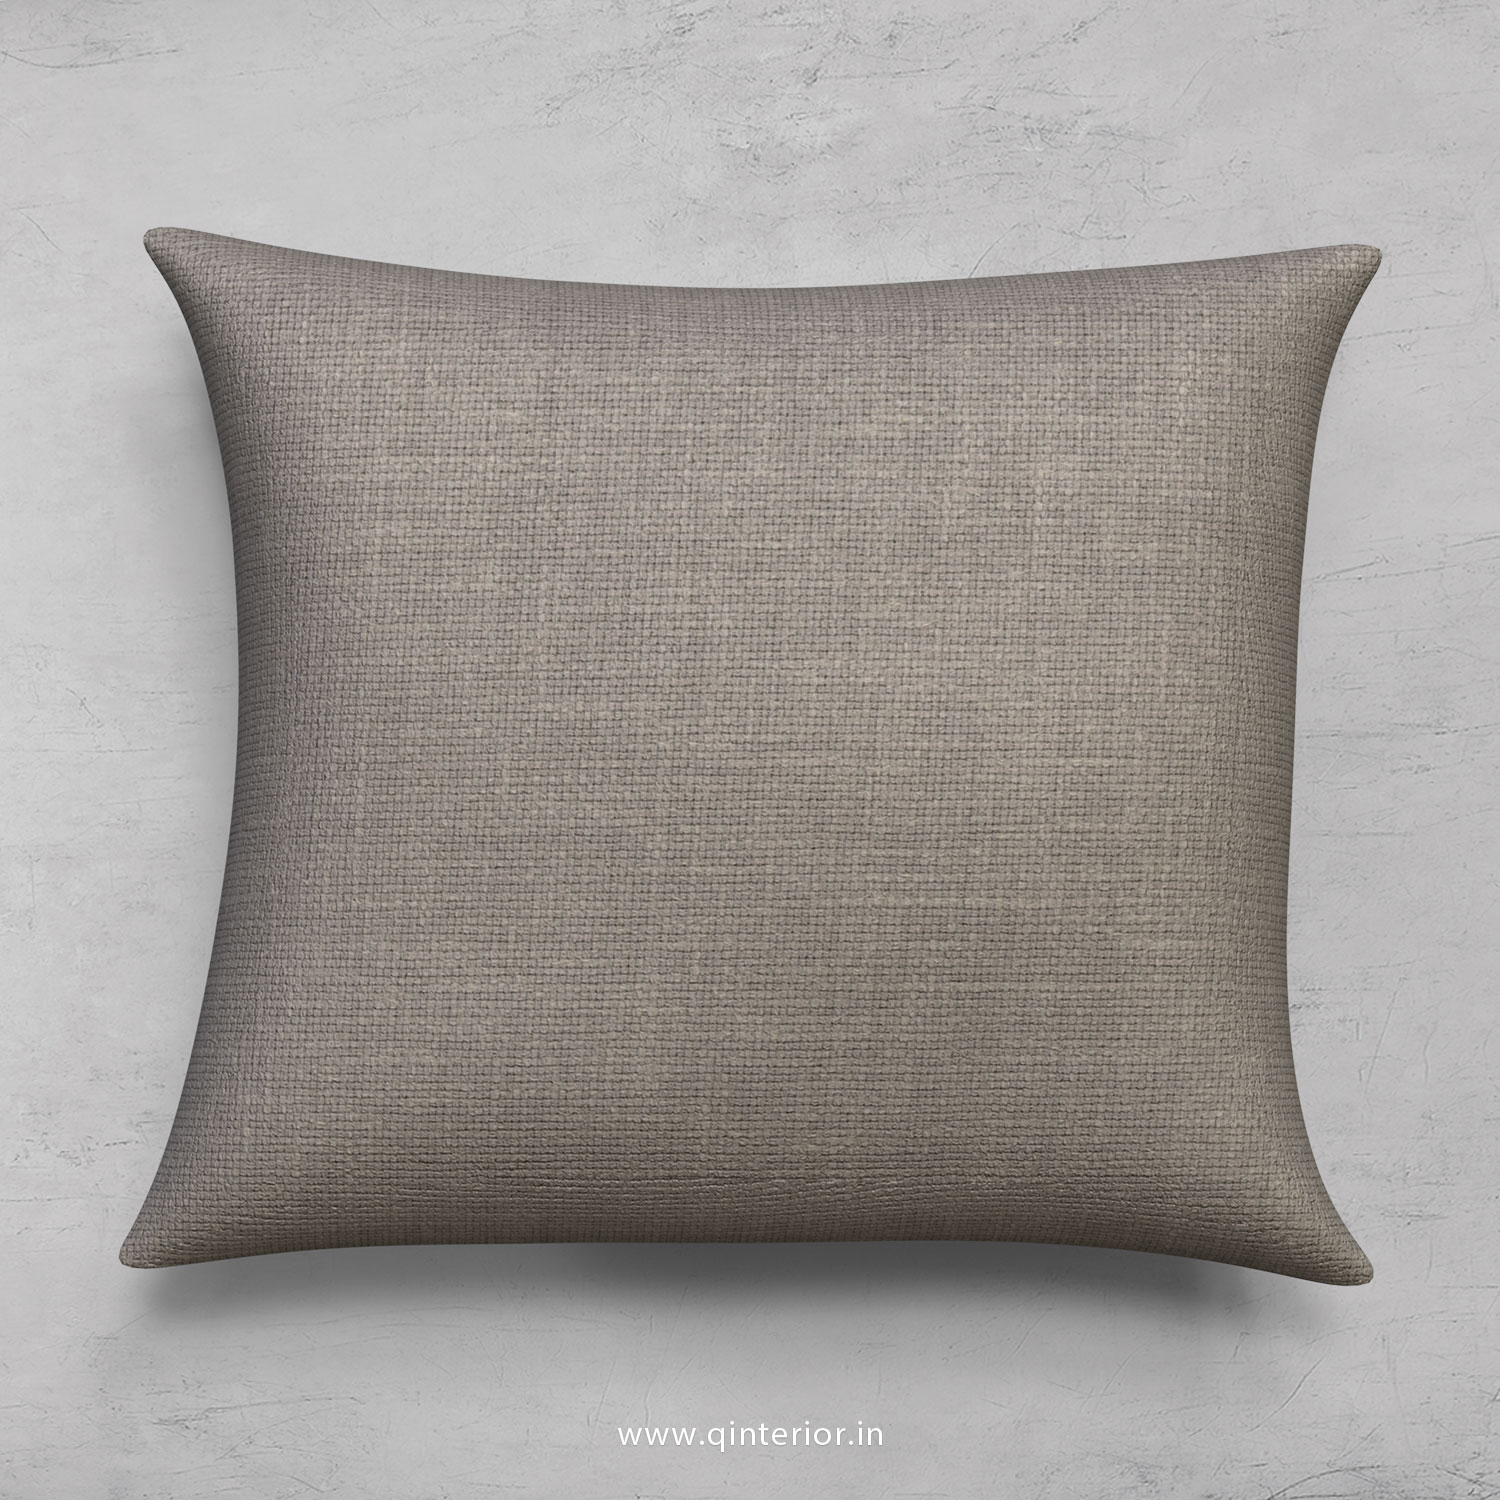 Cushion With Cushion Cover in Cotton Plain - CUS001 CP12